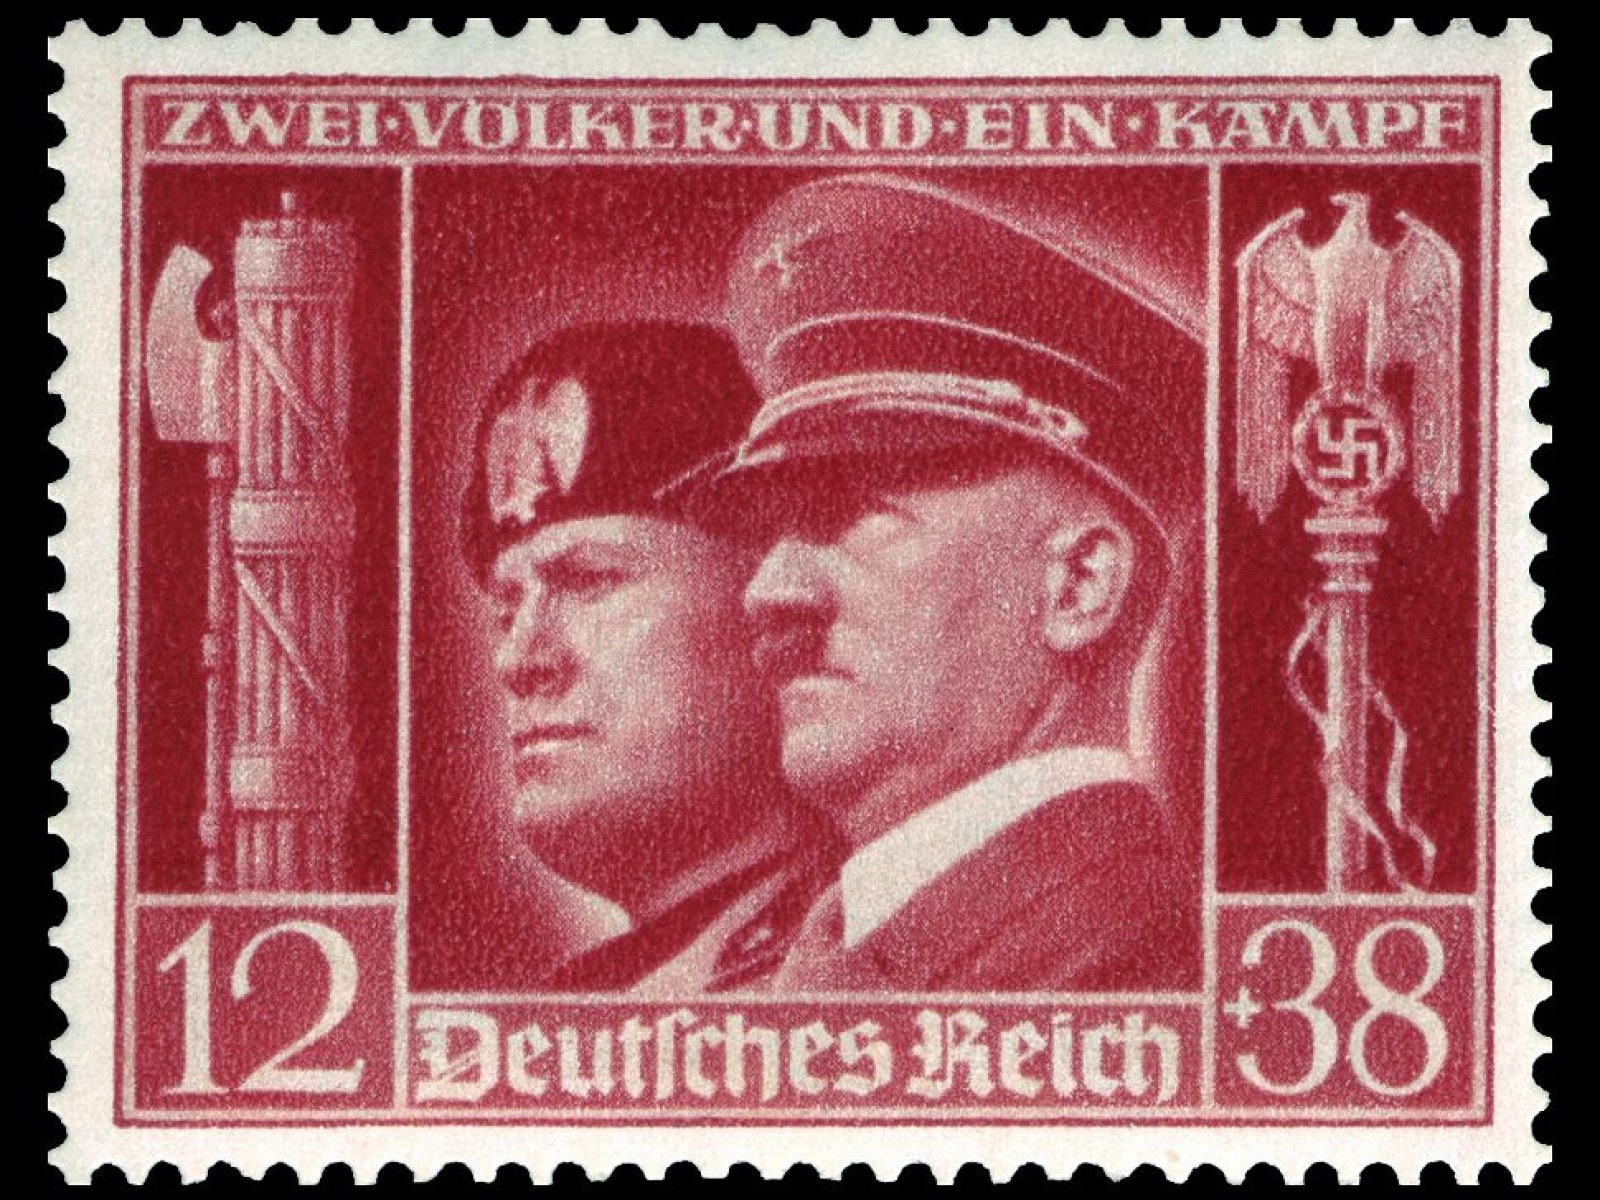 Αποτέλεσμα εικόνας για stamps for war 1940